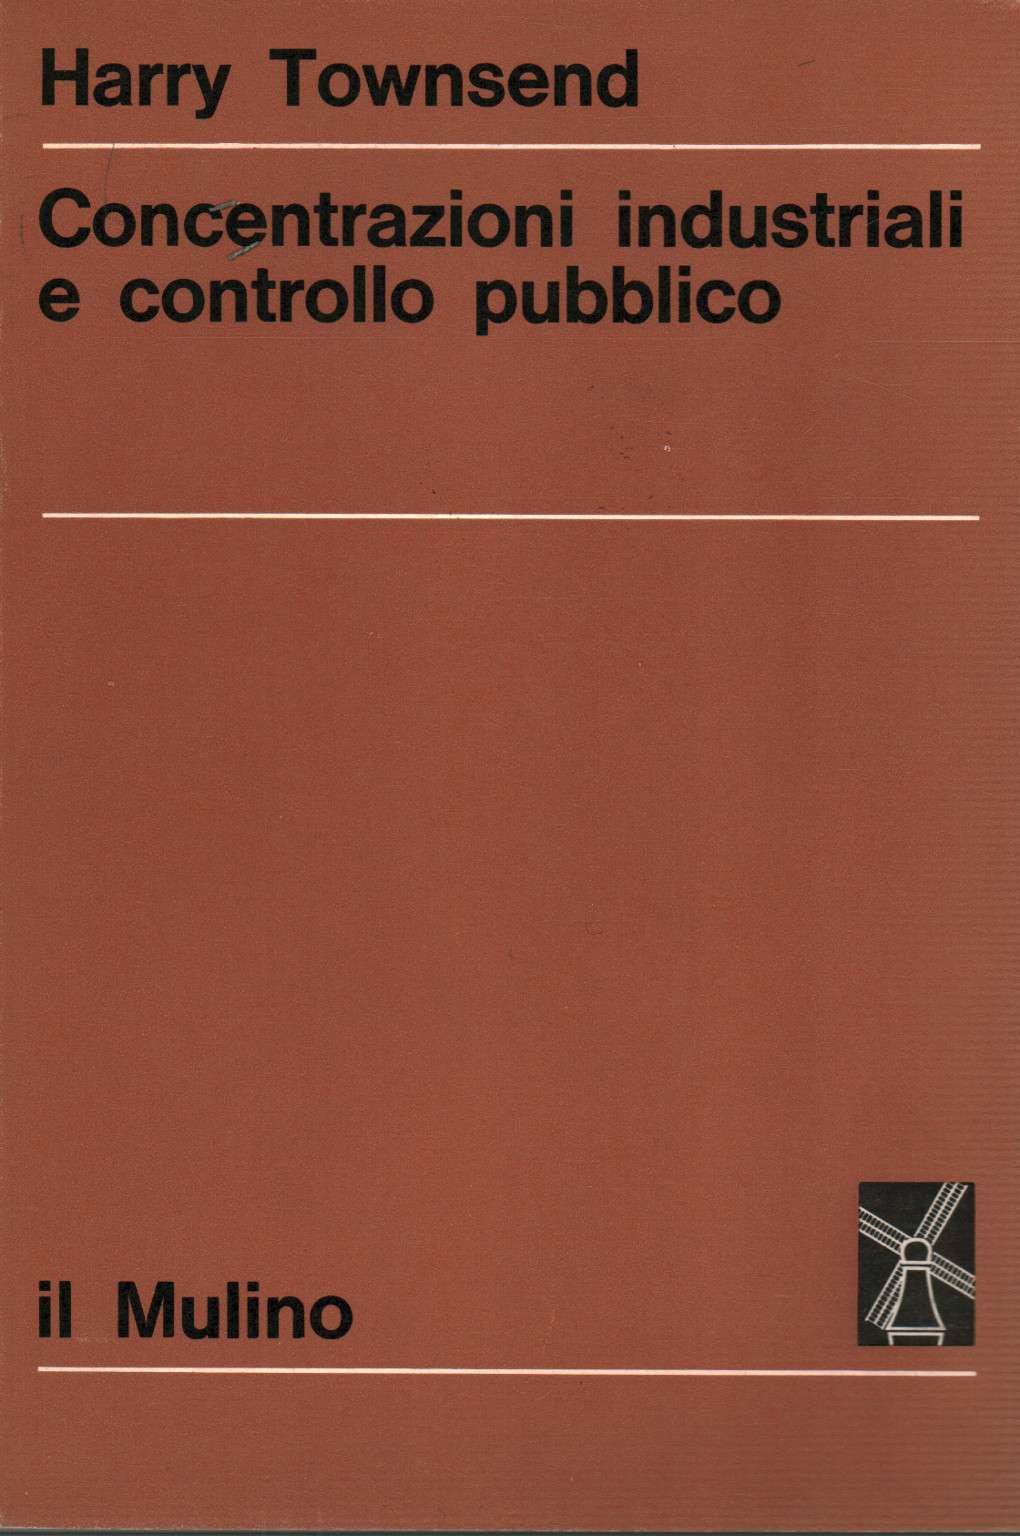 Concentrazioni industriali e controllo pubblico, s.a.